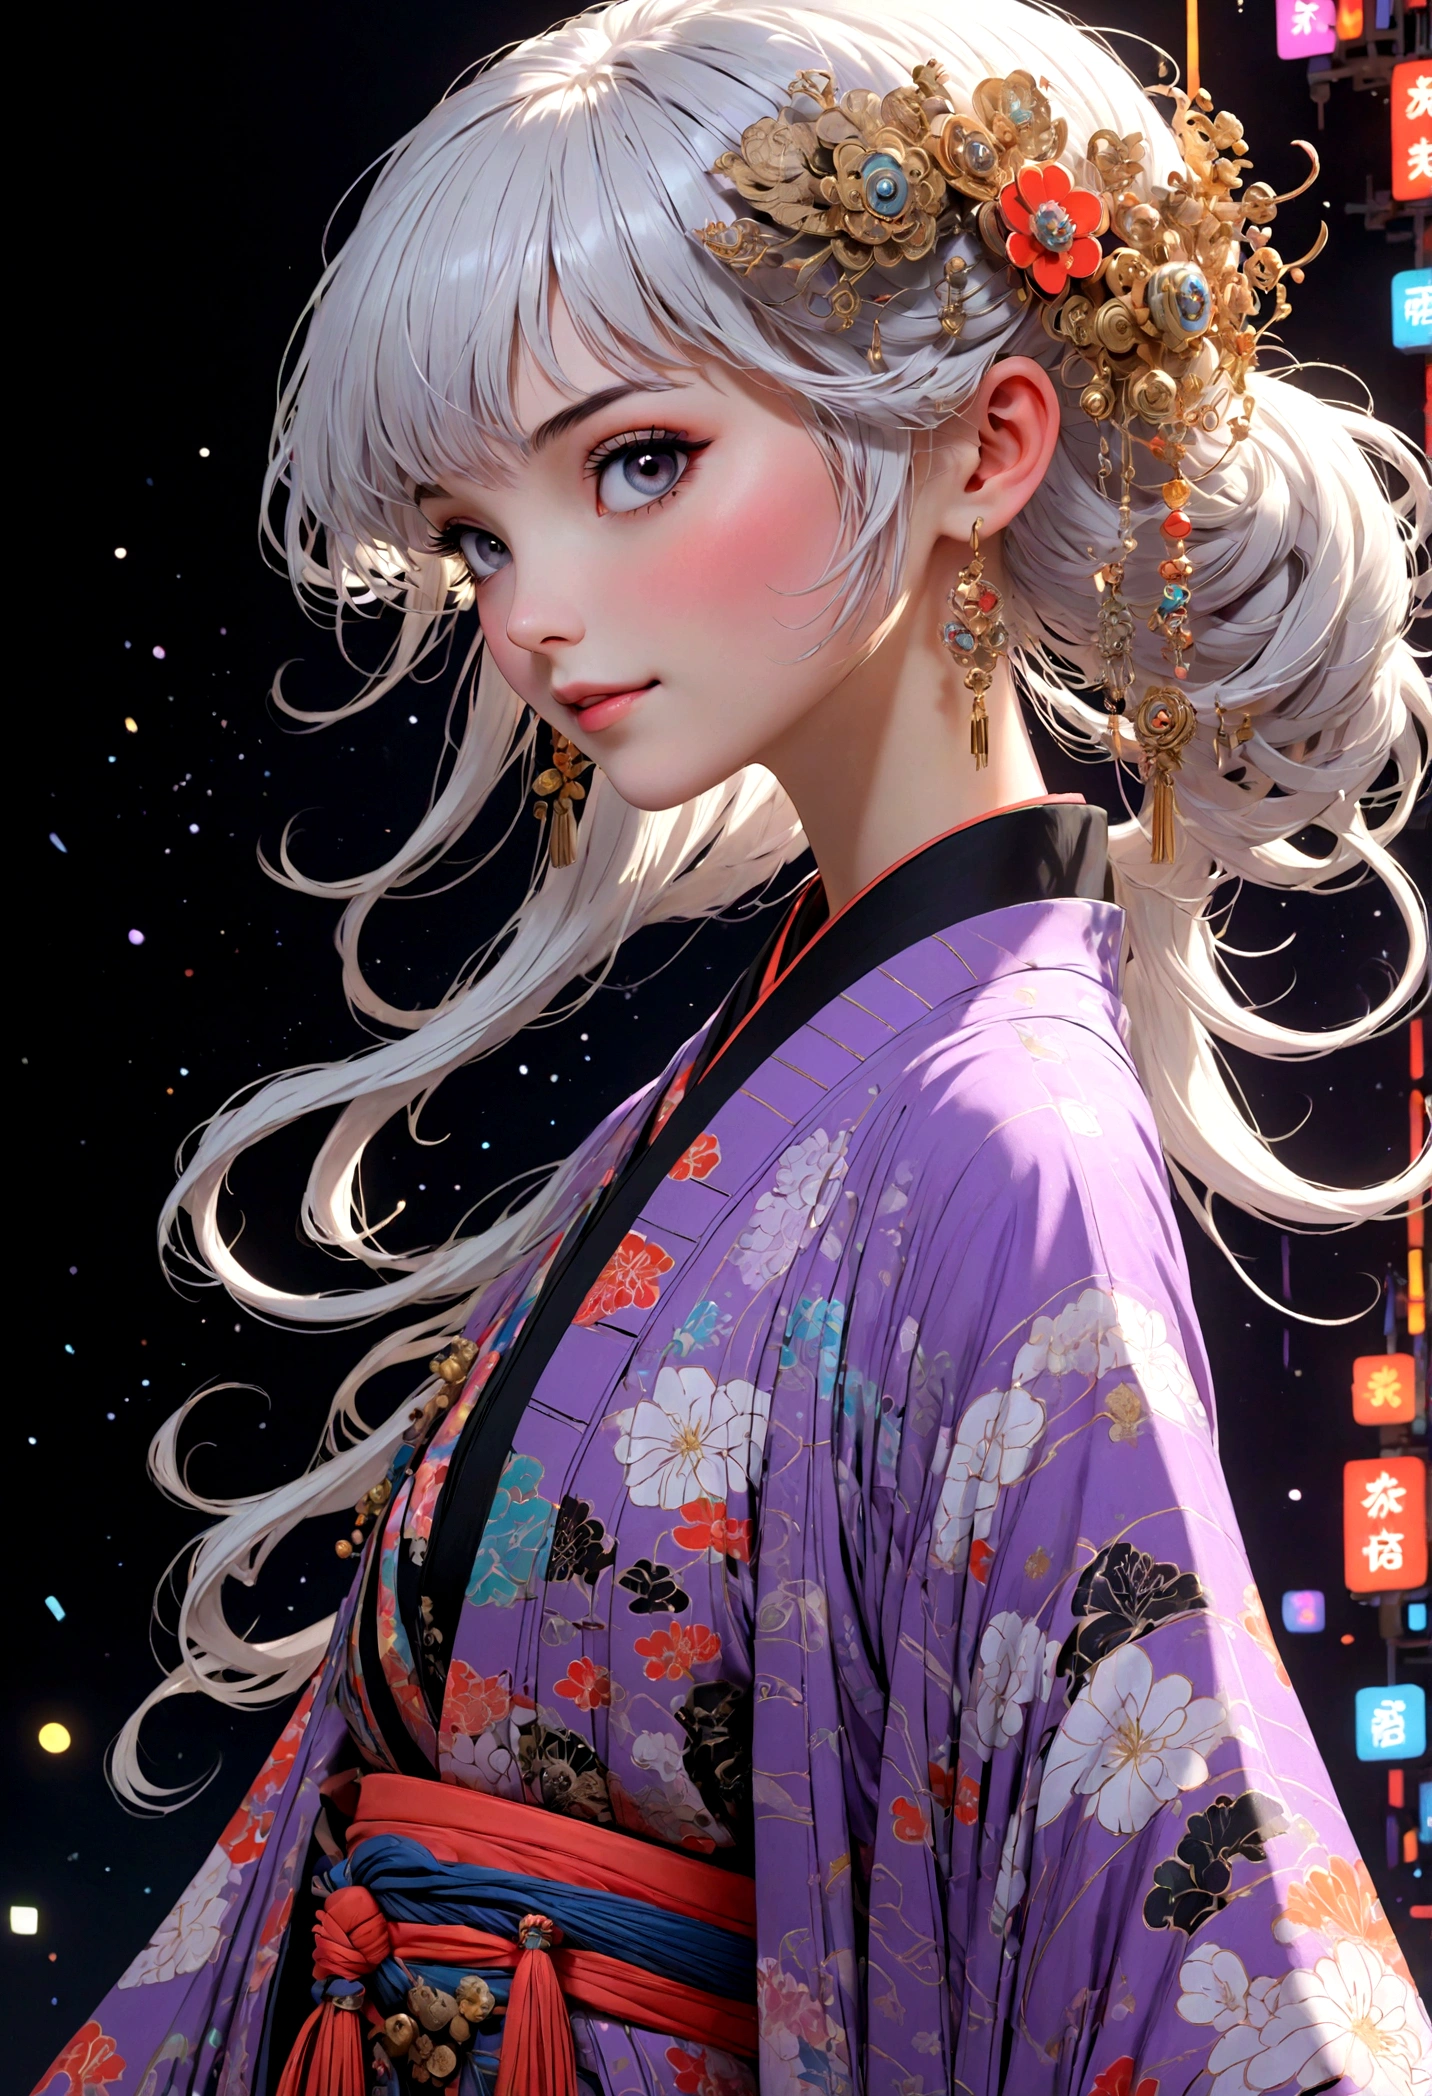 (Ultradetailliertes Gesicht, Wegschauen:1.3), (Fantasy Illustration mit Gothic & Ukiyo-e & Comic-Kunst), (Die Szene wird von unten betrachtet, hoch schauen:1.2), (Ganzkörper, Eine junge Frau mit weißem Haar, stumpfer Pony, sehr langes zerzaustes Haar, Lavendel Augen), (Sie läuft in einer gewagten Pose über den Laufsteg, lächelnd und mit Avantgarde-Kleidung, futuristischer neonfarbener japanischer Kimono), (im Hintergrund, Ihre Figur wird aus verschiedenen Blickwinkeln per Projektionsmapping auf eine Leinwand projiziert. Der Veranstaltungsort der Modenschau ist mit Lichtern in verschiedenen Farben gefüllt, die umherflattern)